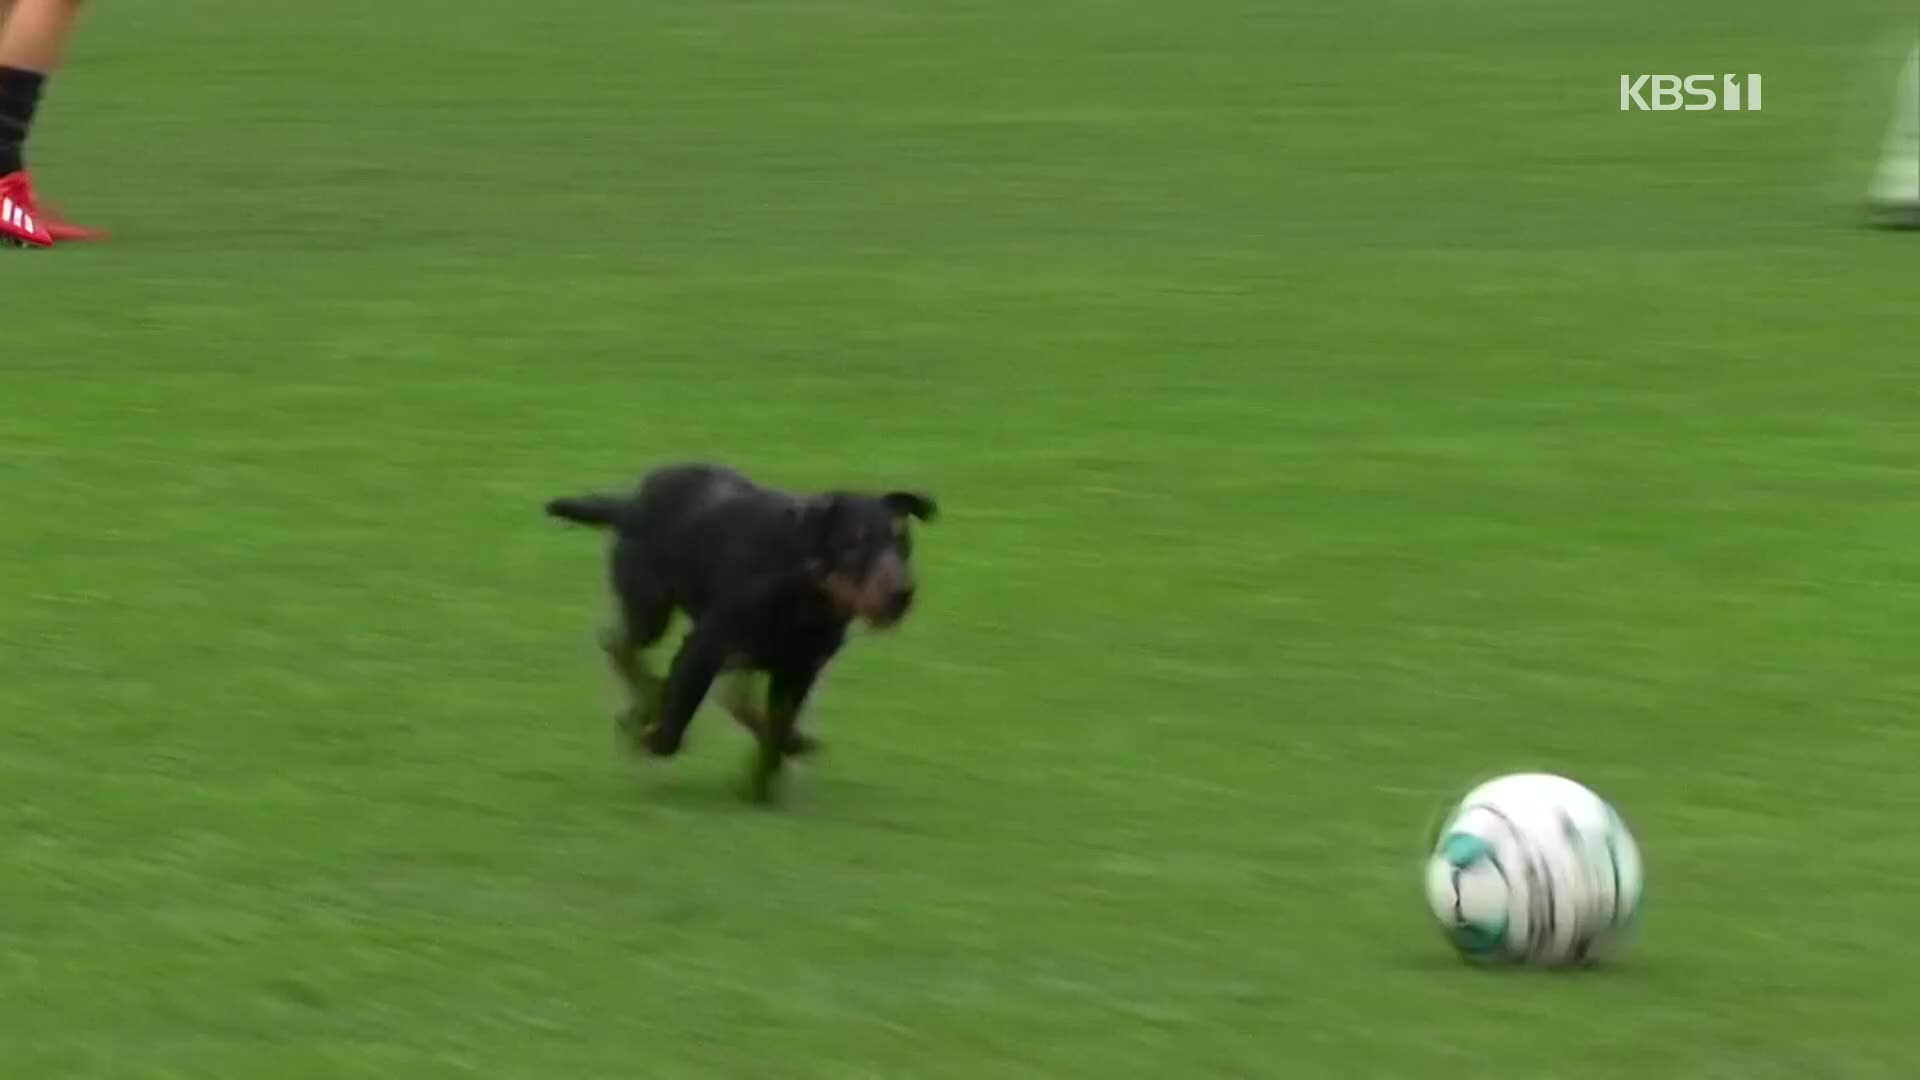 [오늘의 영상] ‘축구장 강아지’는 드리블을 한다?